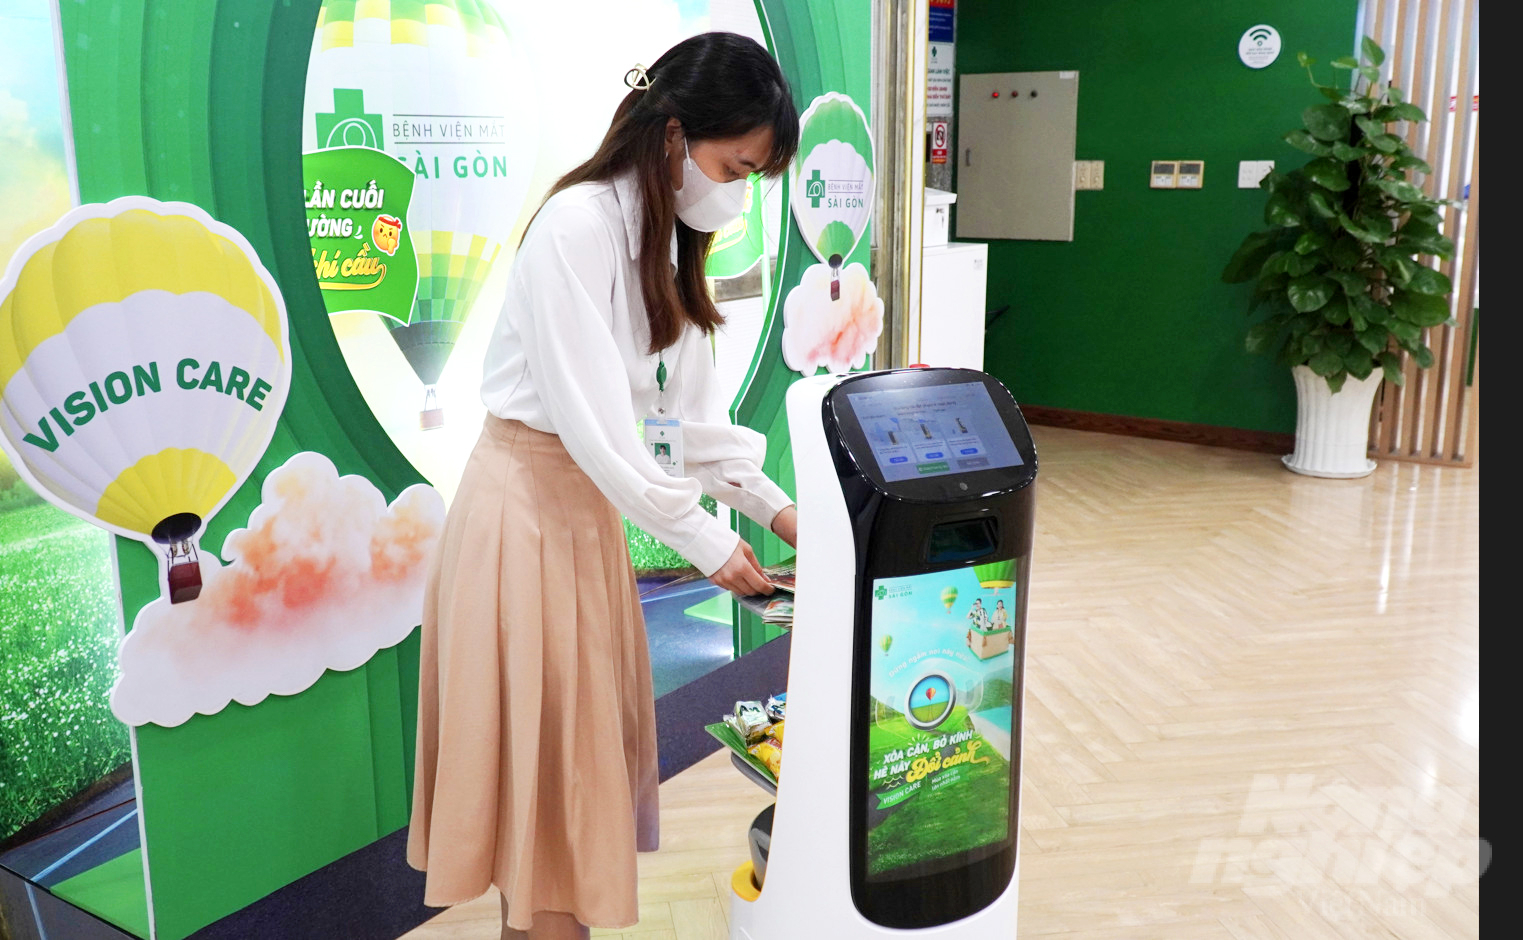 Bệnh viện Mắt Sài Gòn Cần Thơ đưa robot vào phục vụ khách hàng. Ảnh: Lê Hoàng Vũ.